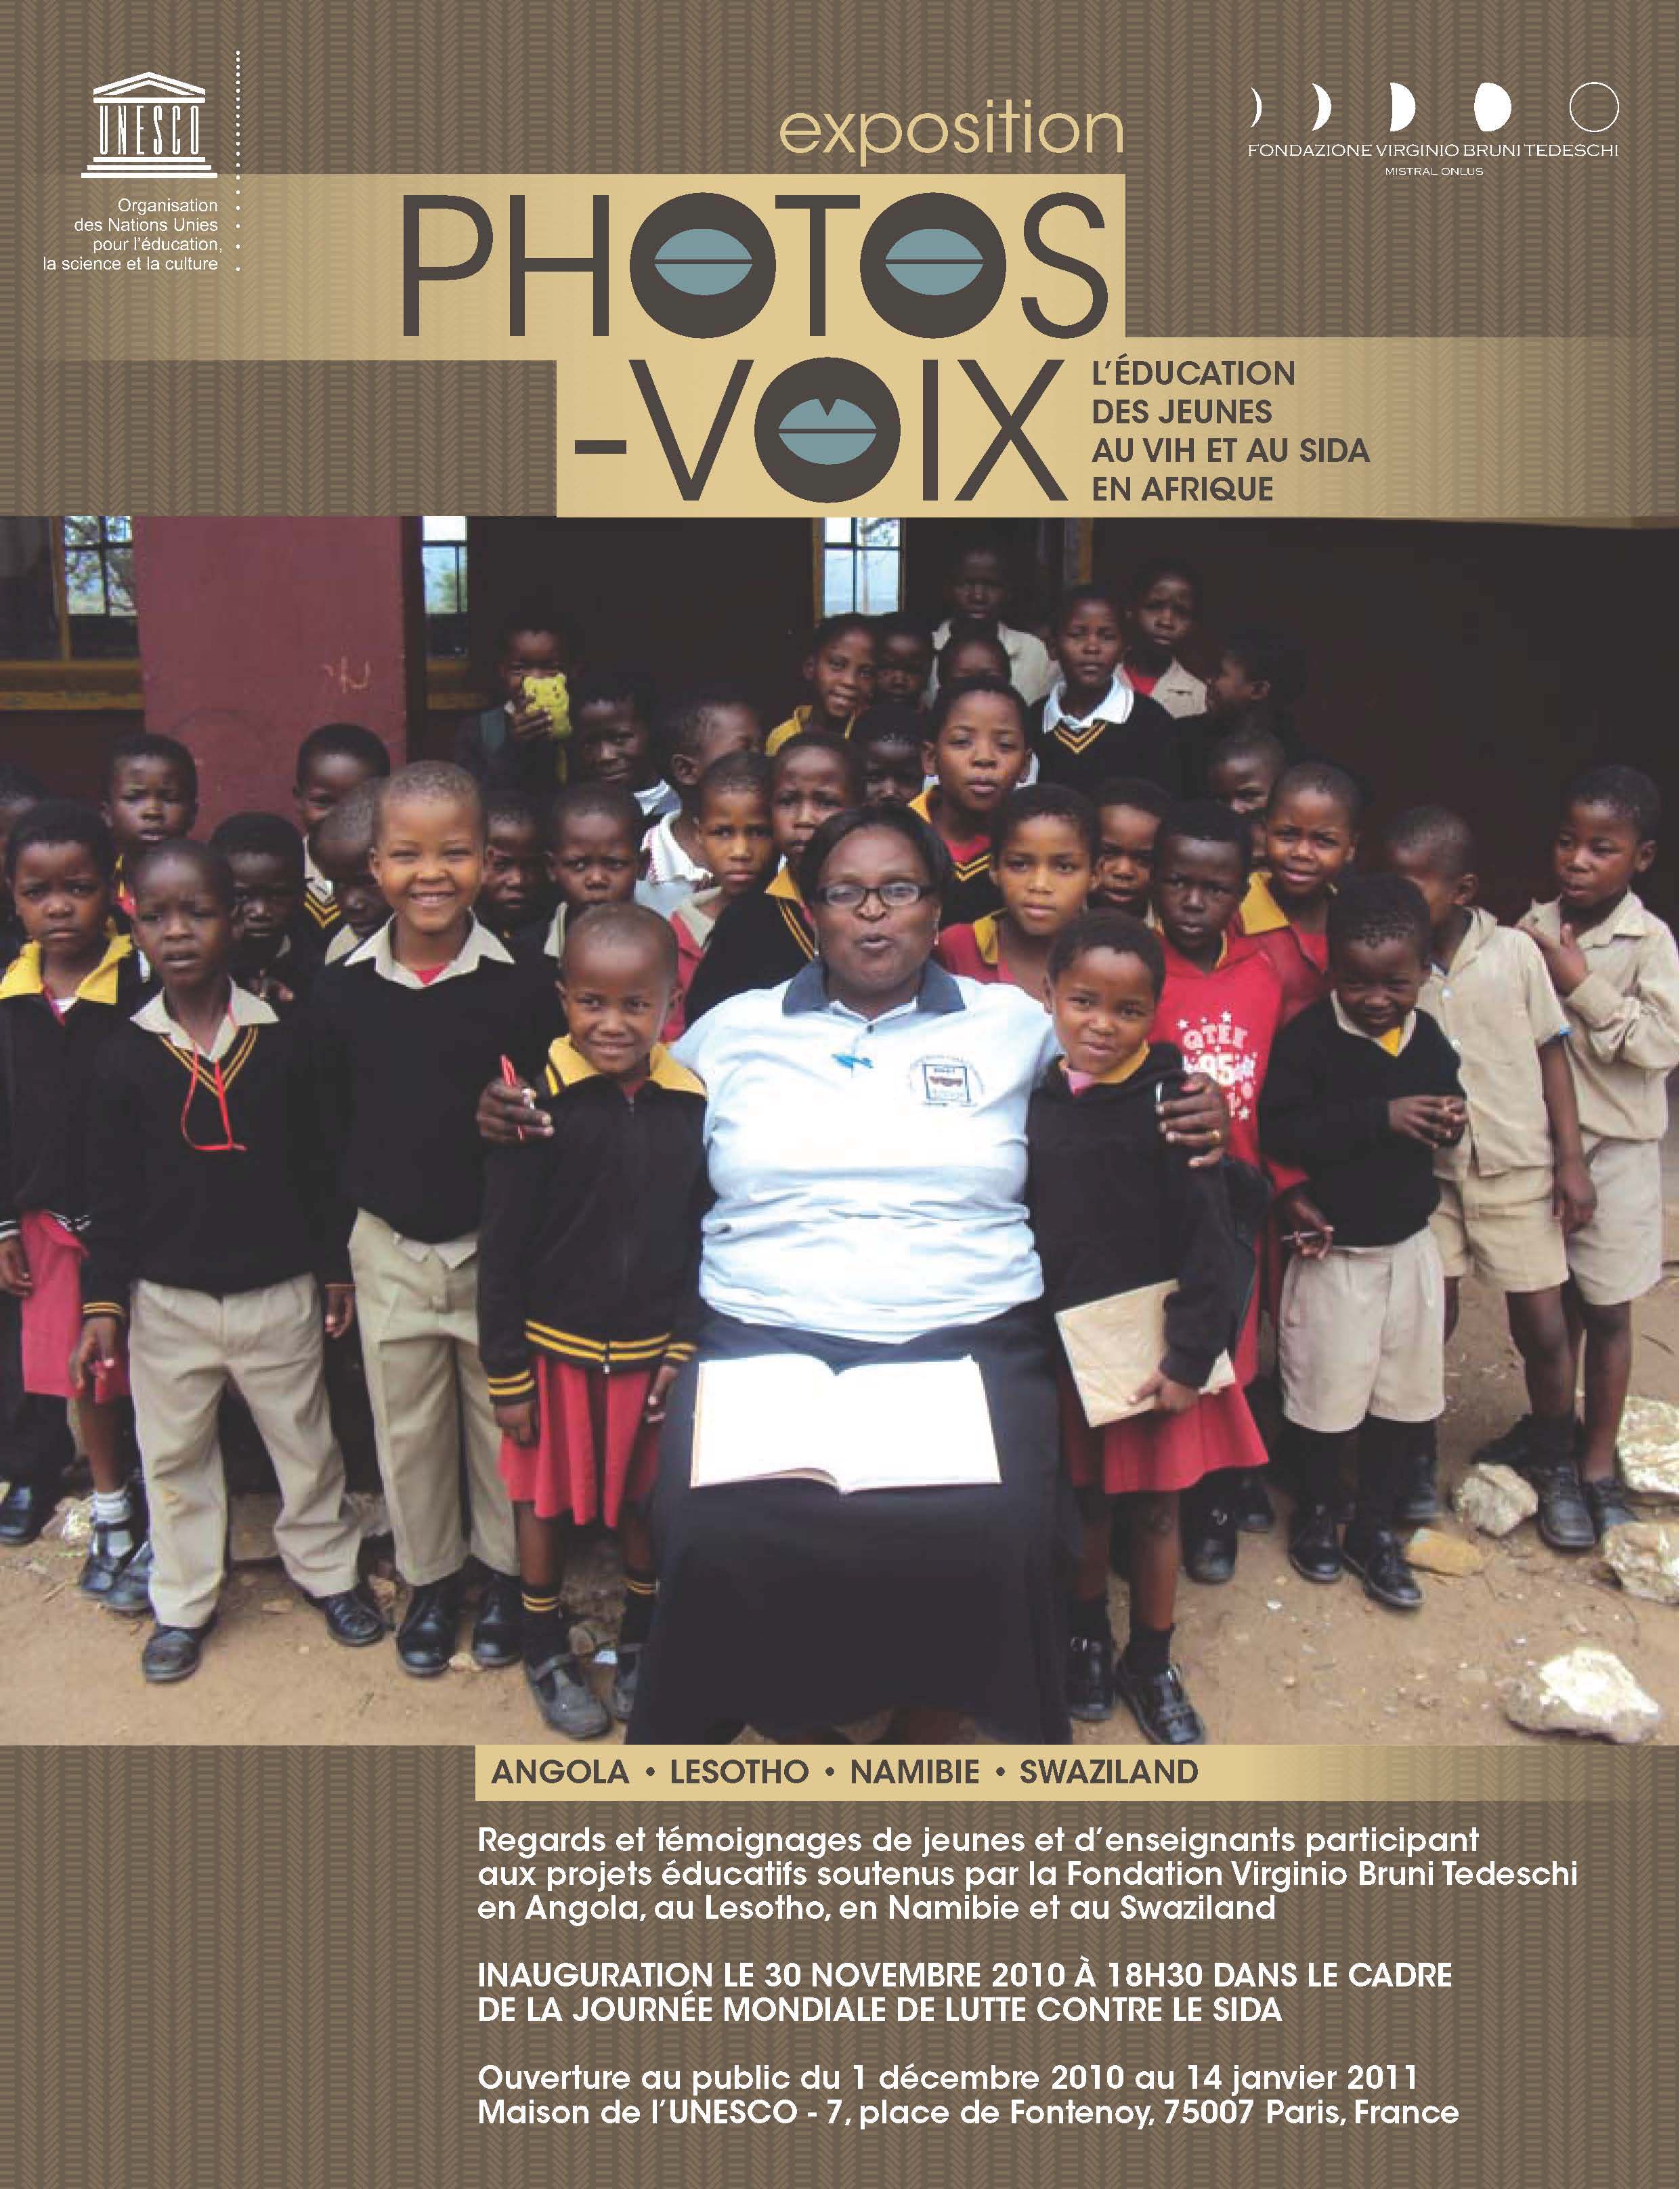 Photos-Voix : lducation des jeunes au VIH et au SIDA en Afrique